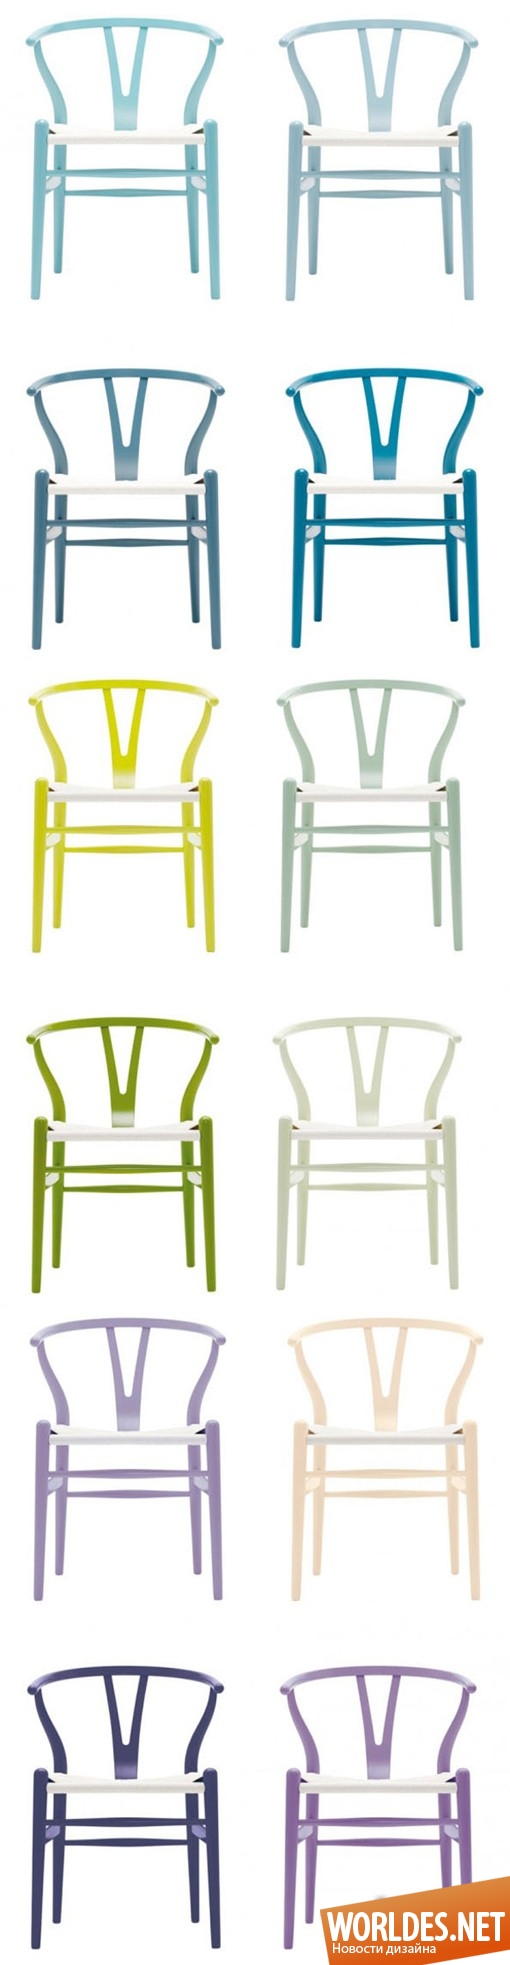 дизайн мебели, дизайн стульев, стулья, современные стулья, разноцветные стулья, цветные стулья, яркие стулья, красочные стулья, современные стулья, удобные стулья, красивые стулья